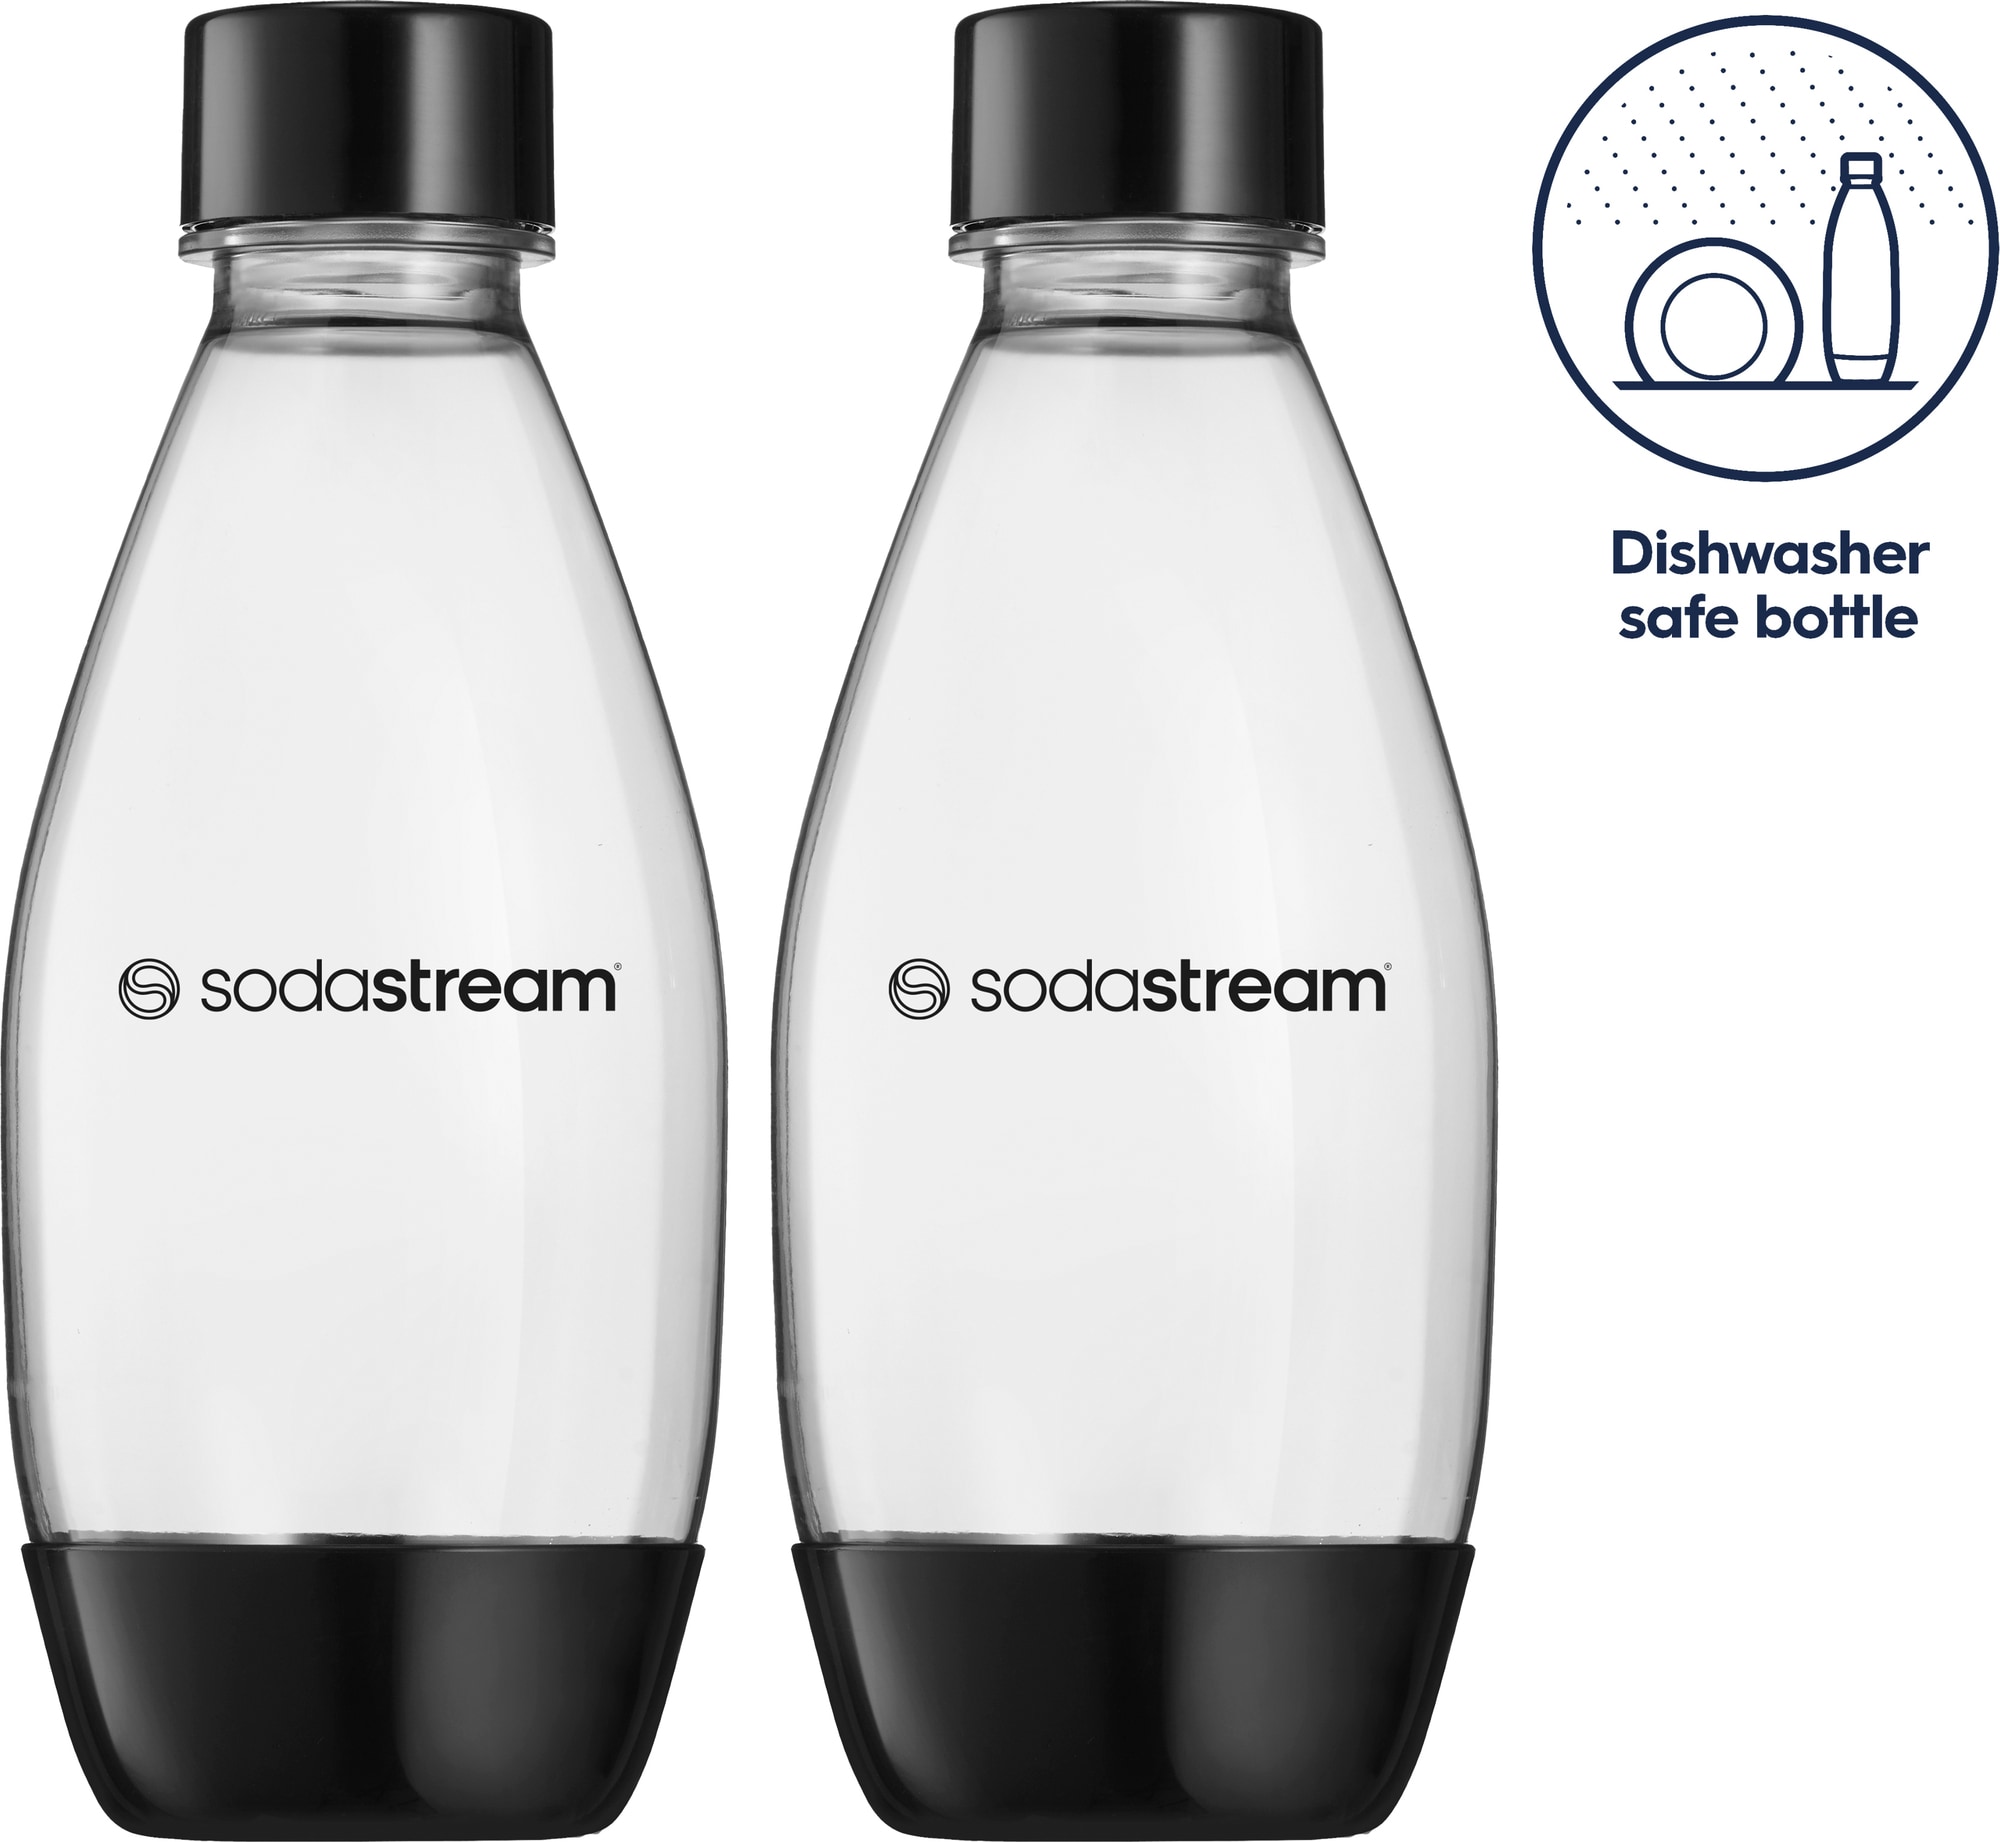 SodaStream DWS Fuse kulsyreflaske 1748223770 (2-pk, sort)